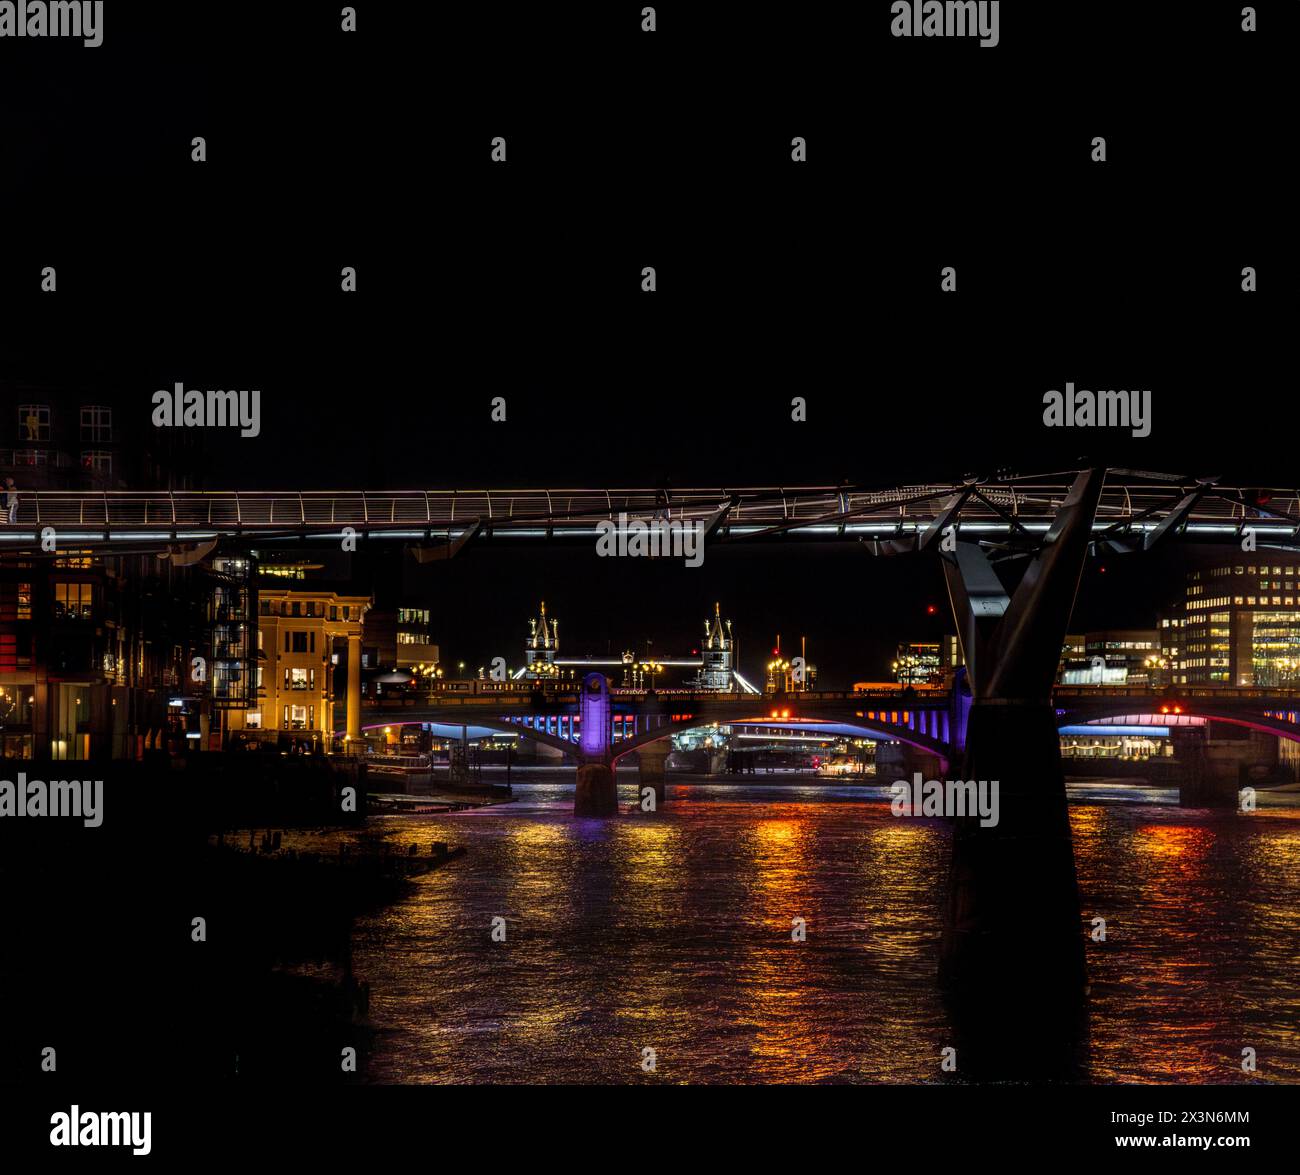 Frontalblick von der Themse auf die Millennium Bridge, Blackfriars Bridge und die Tower Bridge bei Nacht, deren Lichter im Rive reflektiert werden Stockfoto